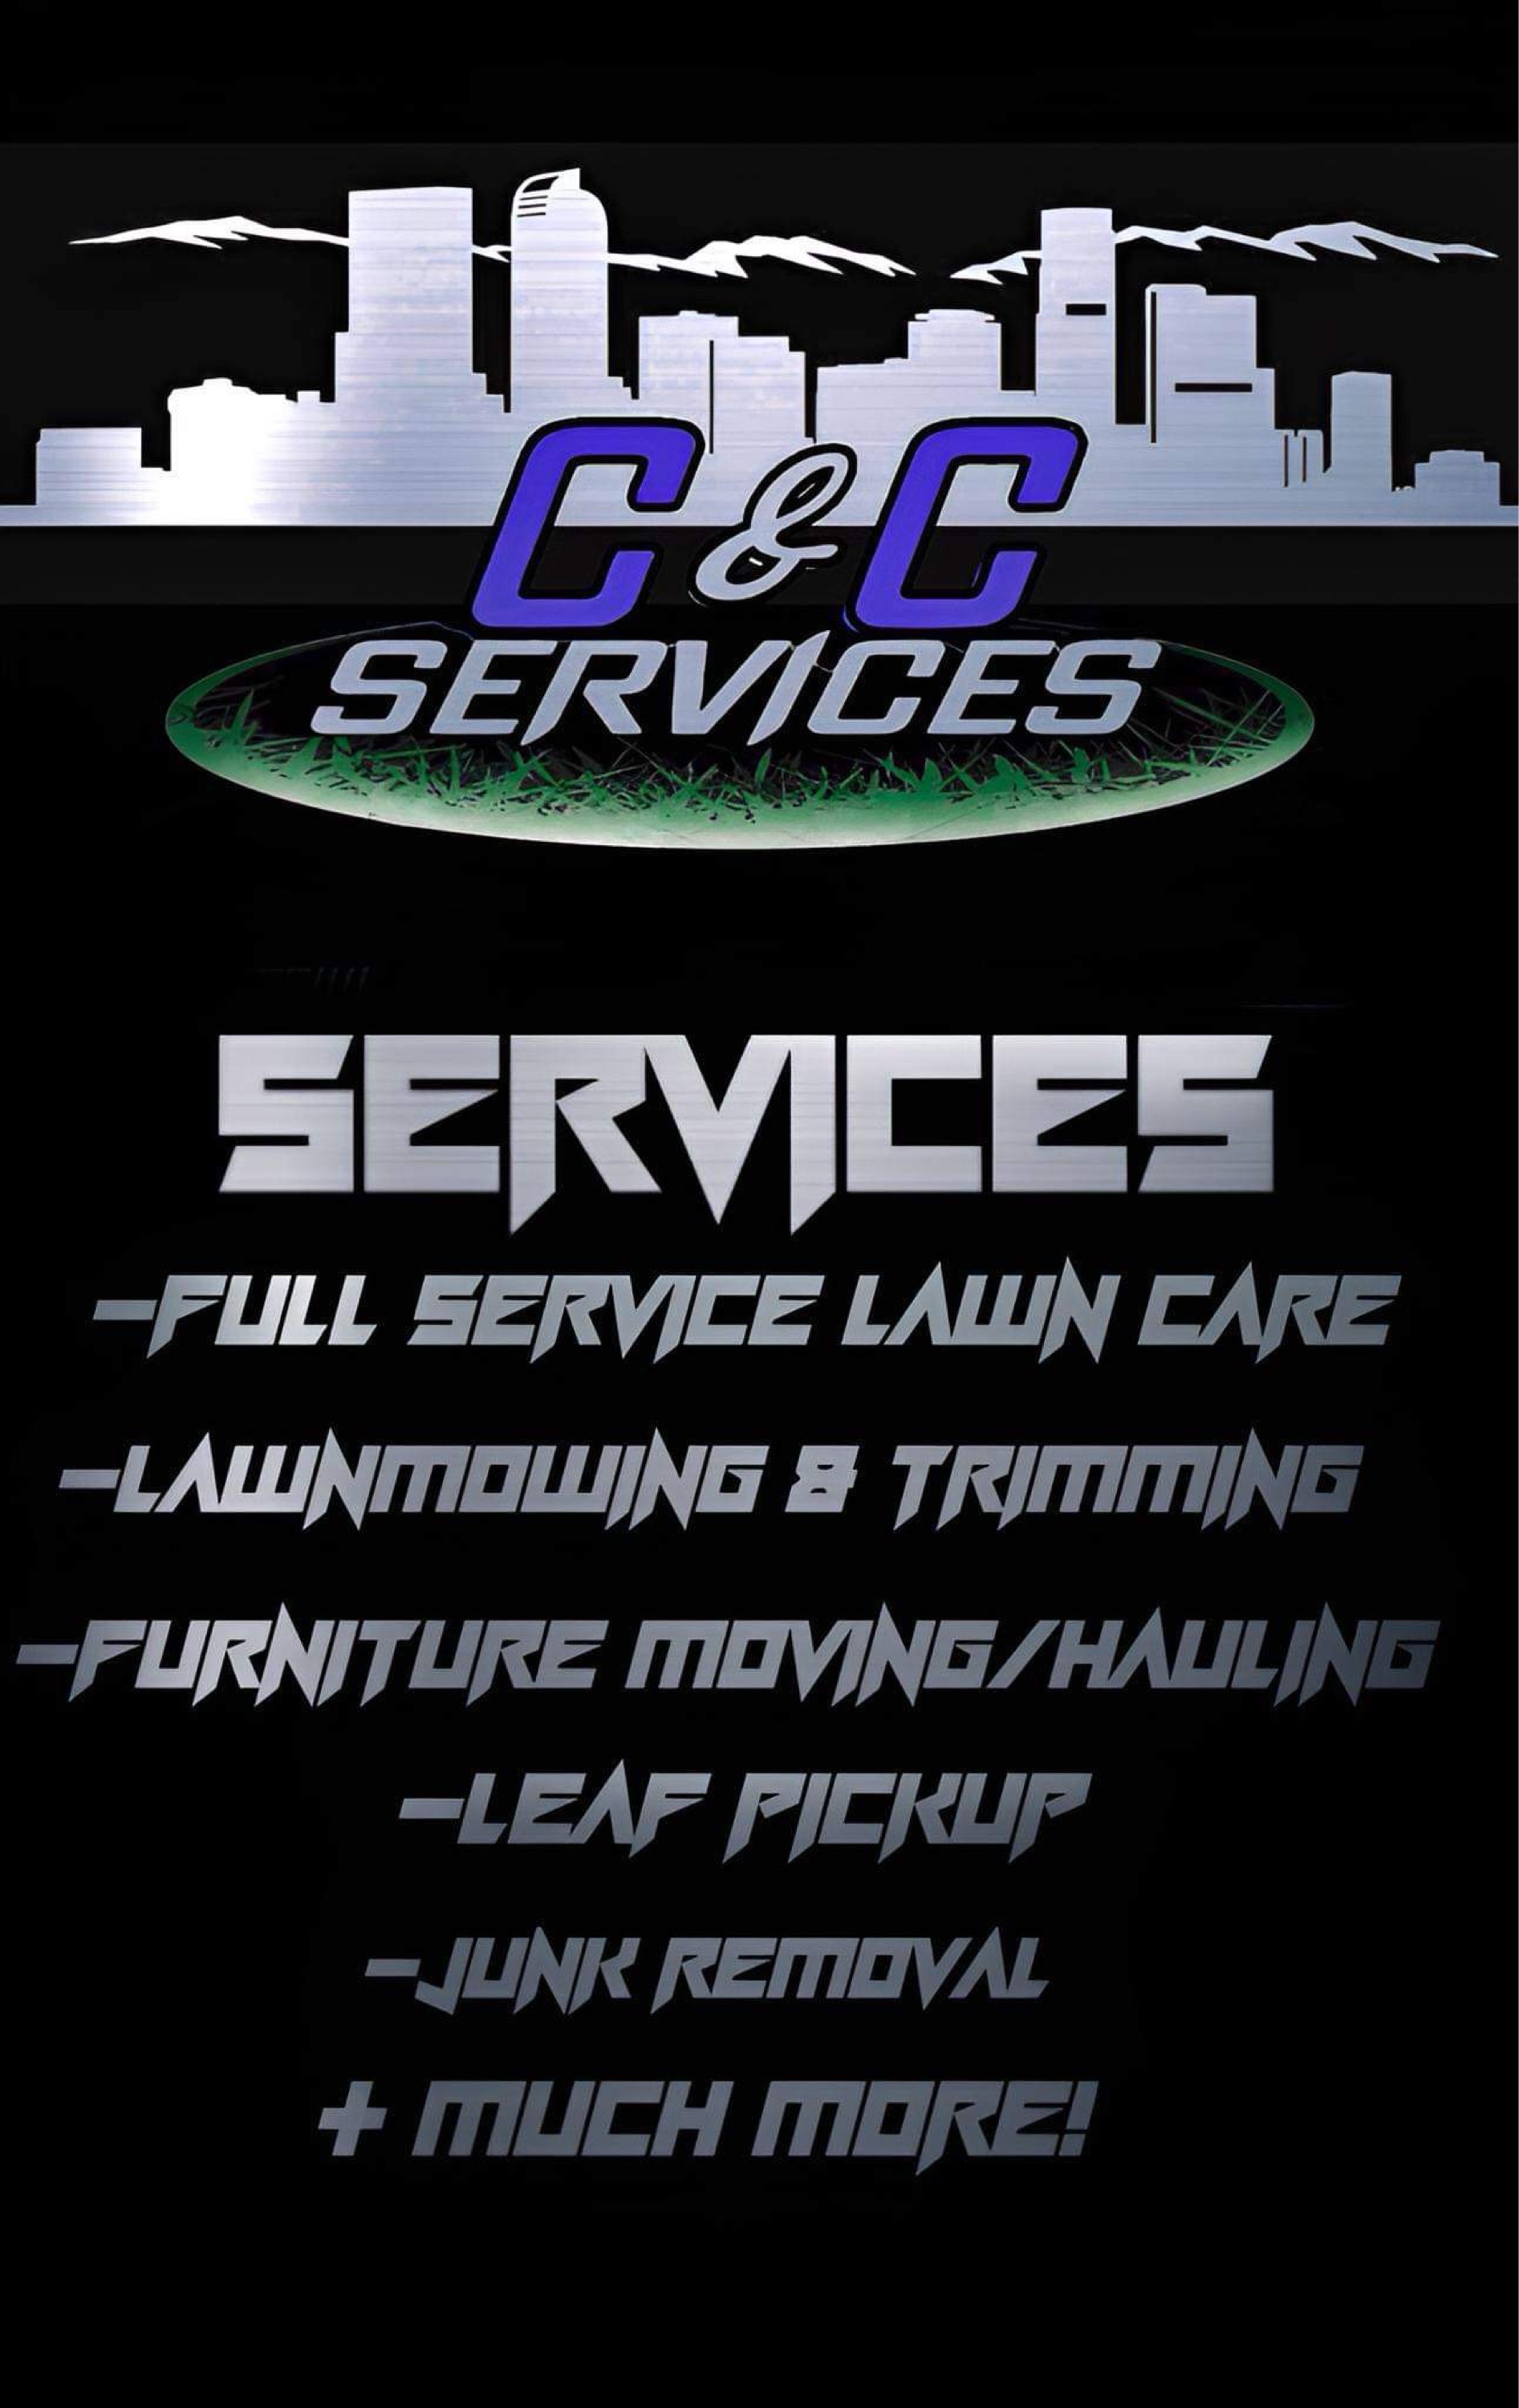 Guerreros Services LLC Logo